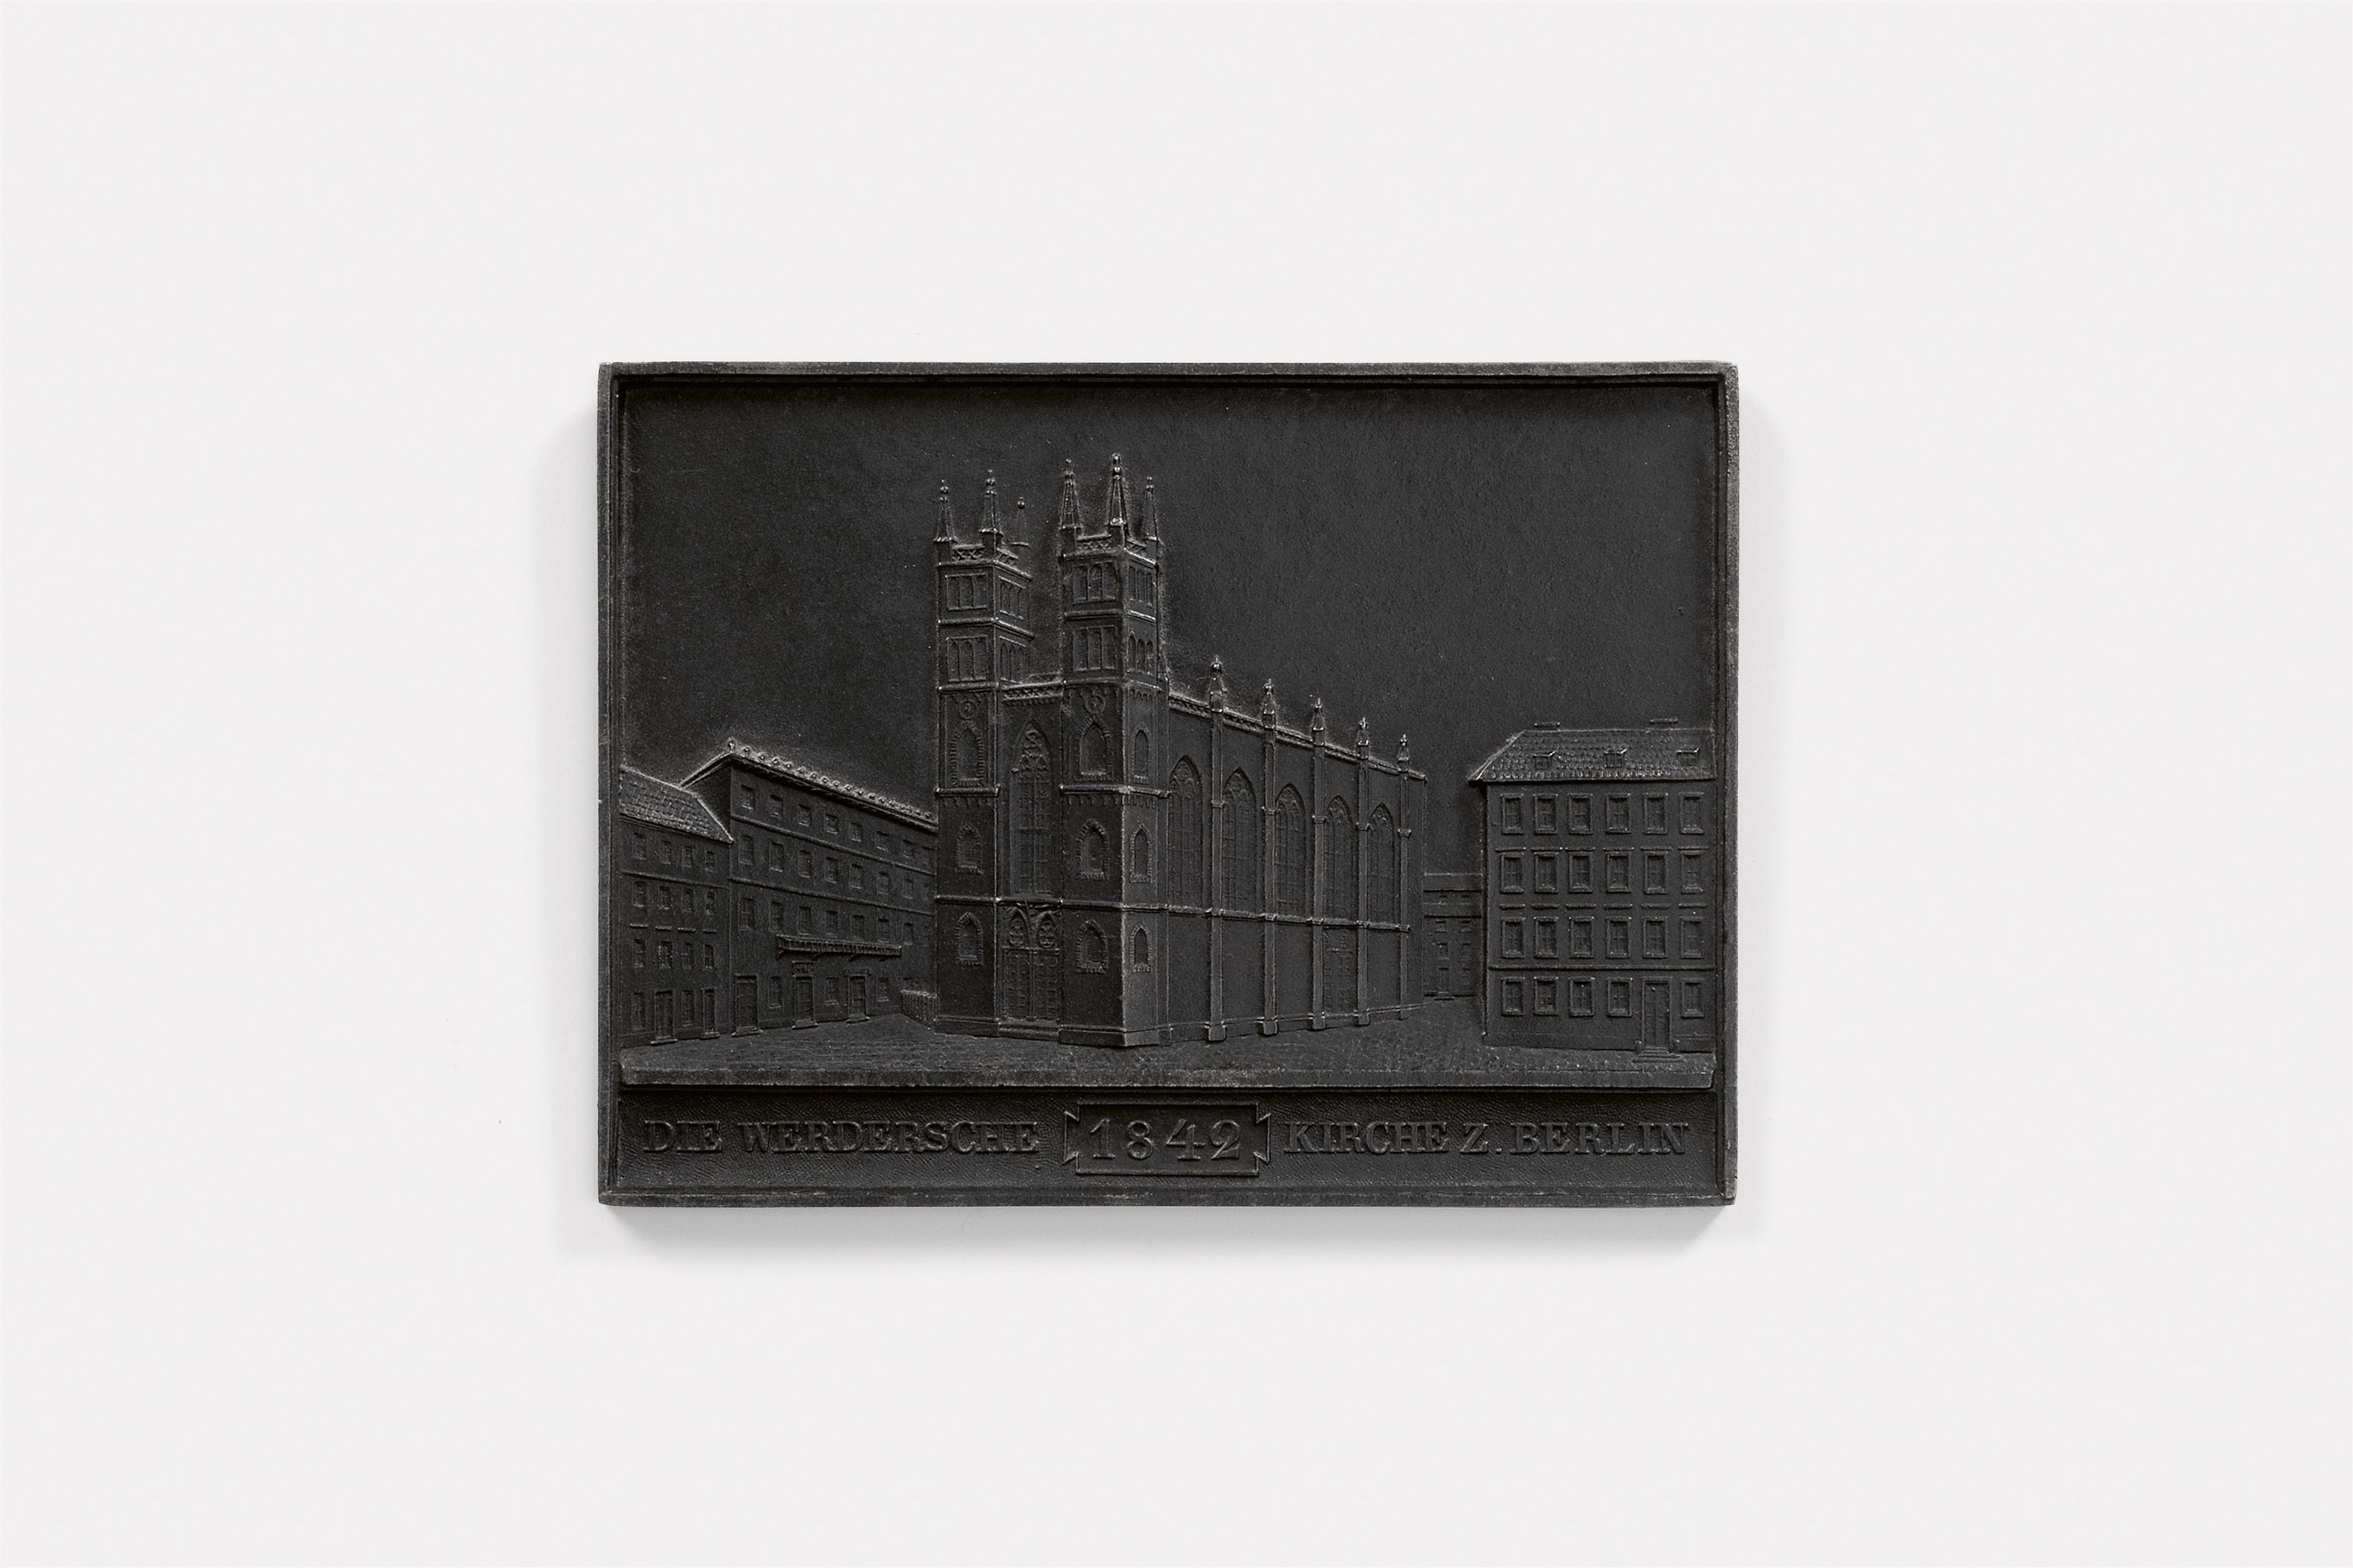 A cast iron New Year's plaque inscribed "DIE WERDERSCHE 1842 KIRCHE Z. BERLIN" - image-1